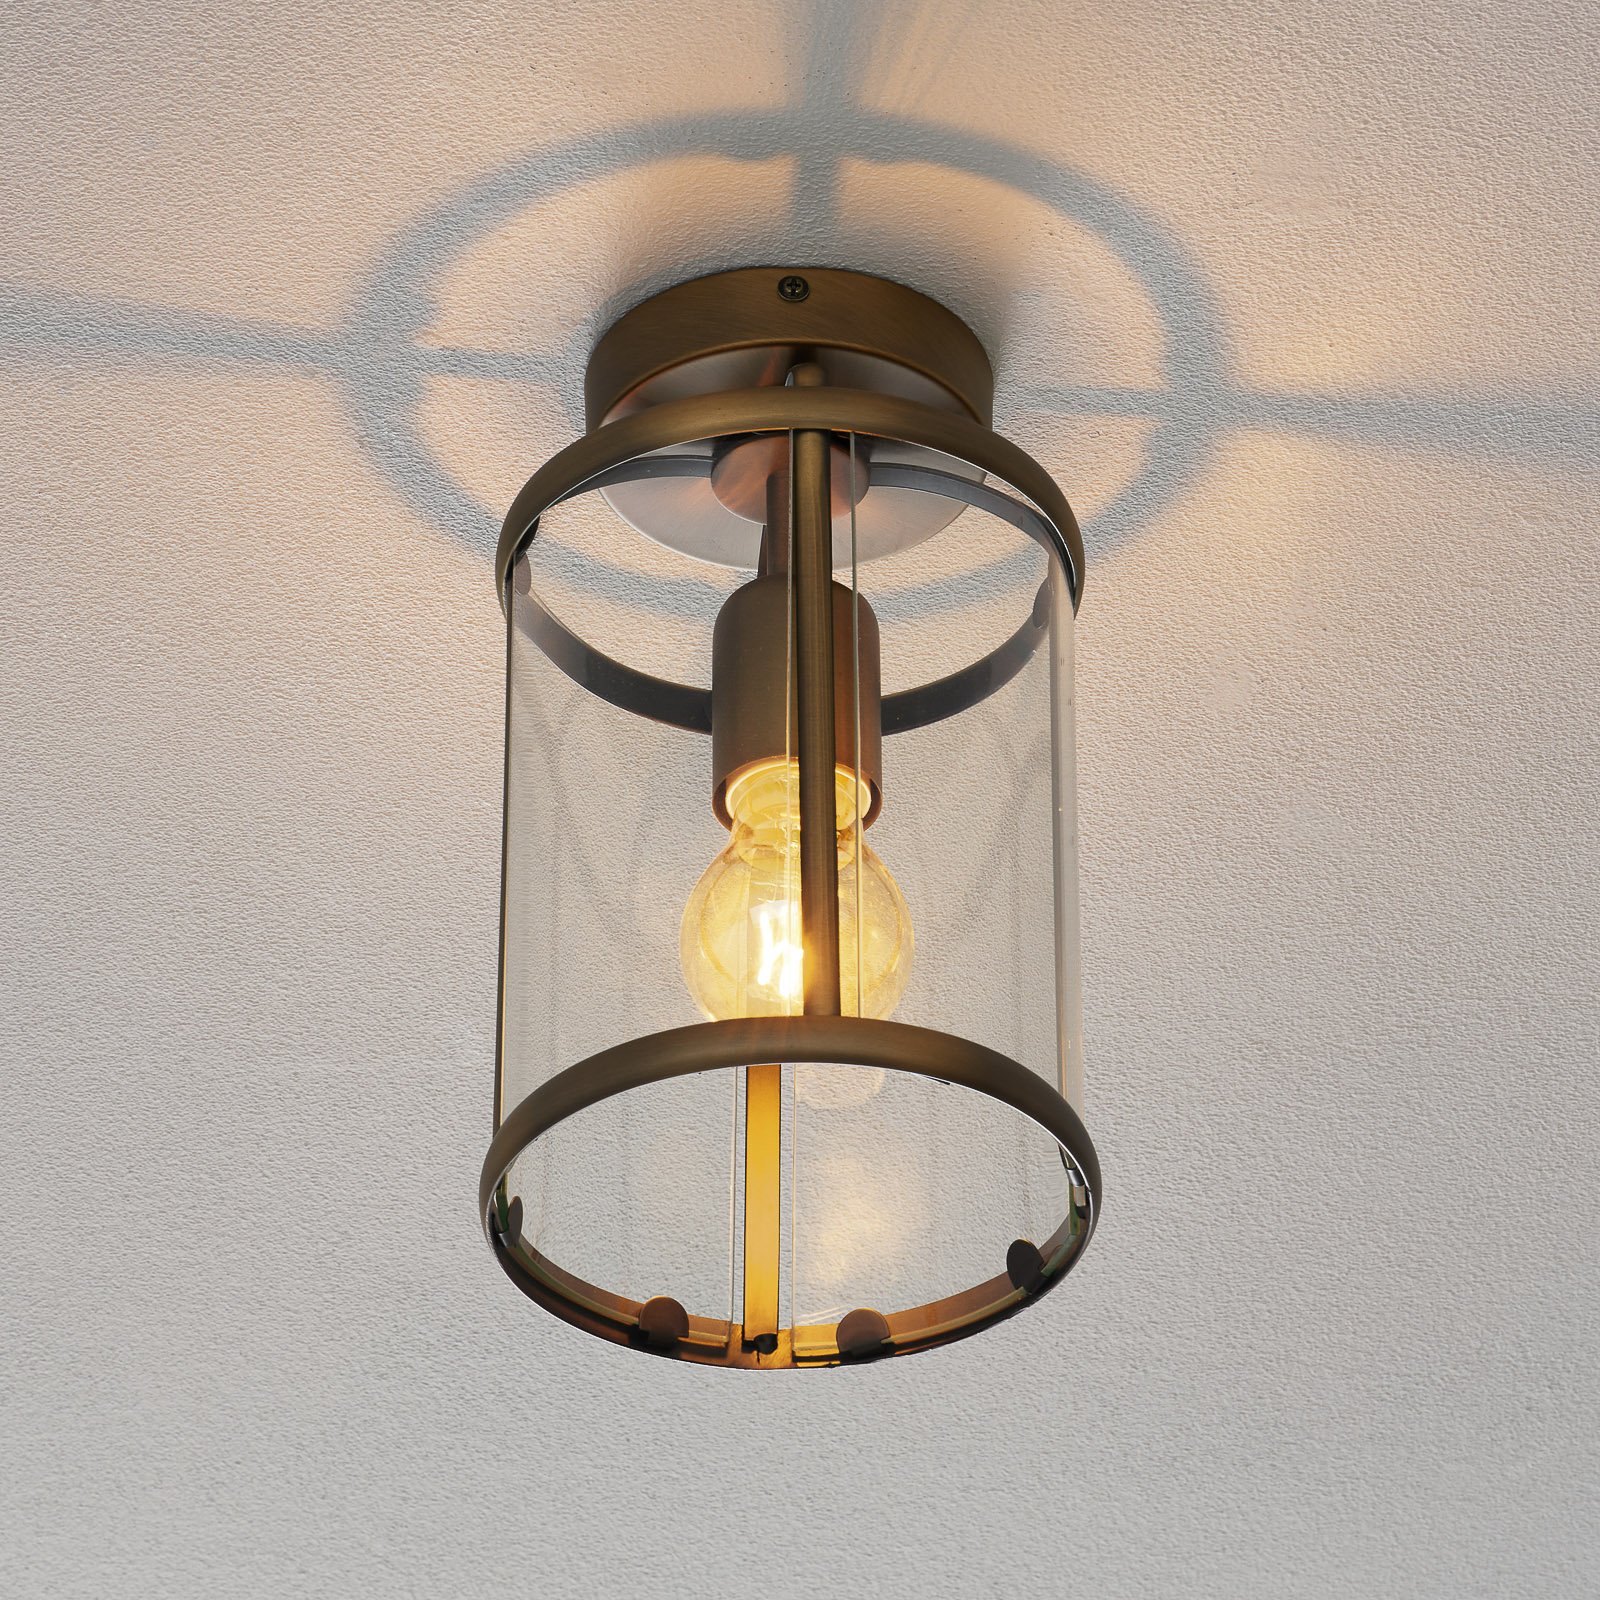 Aantrekkelijke plafondlamp Pimpernel